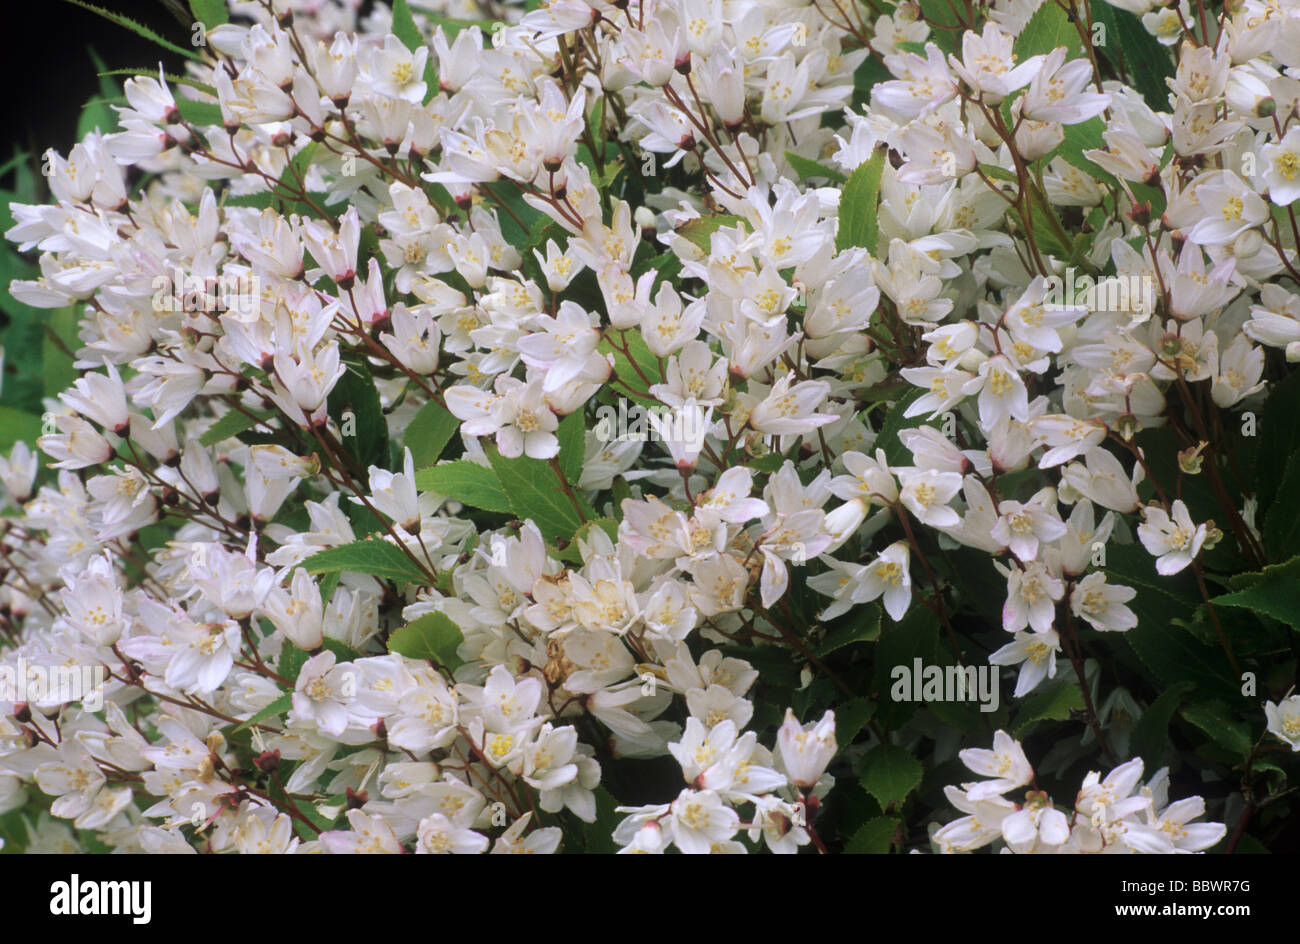 Deutzia gracilis 'Nikko' fiore bianco fiori del giardino di piante vegetali Foto Stock